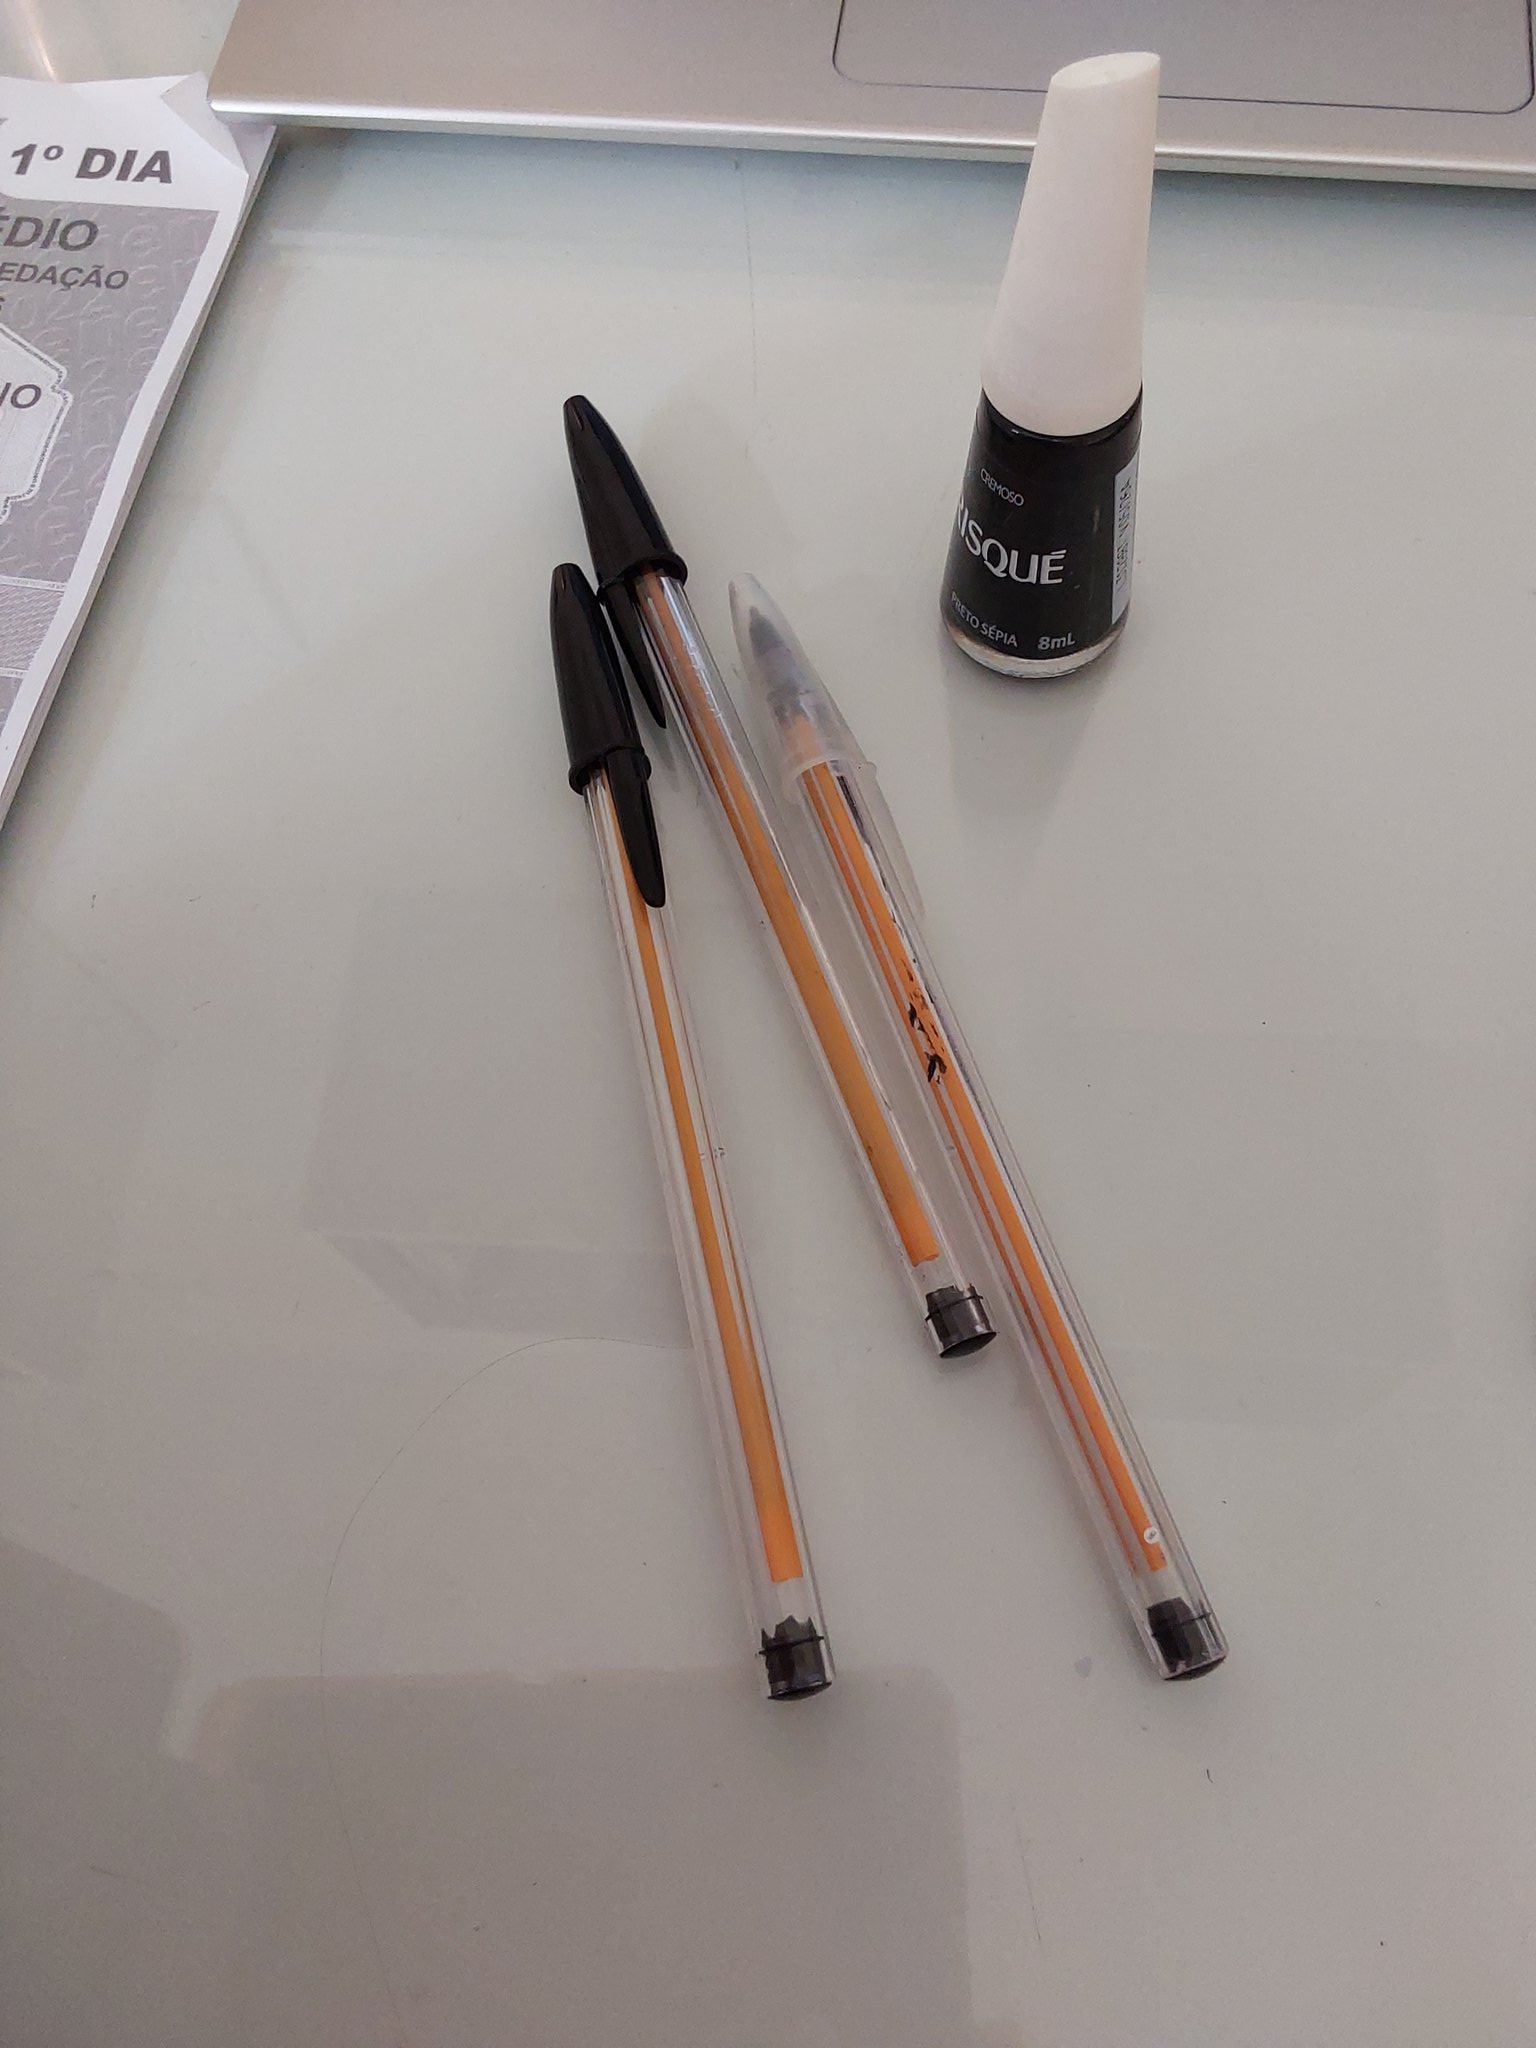 Lara 🩺 on X: Indo pintar o tubo amarelo das canetas com esmalte